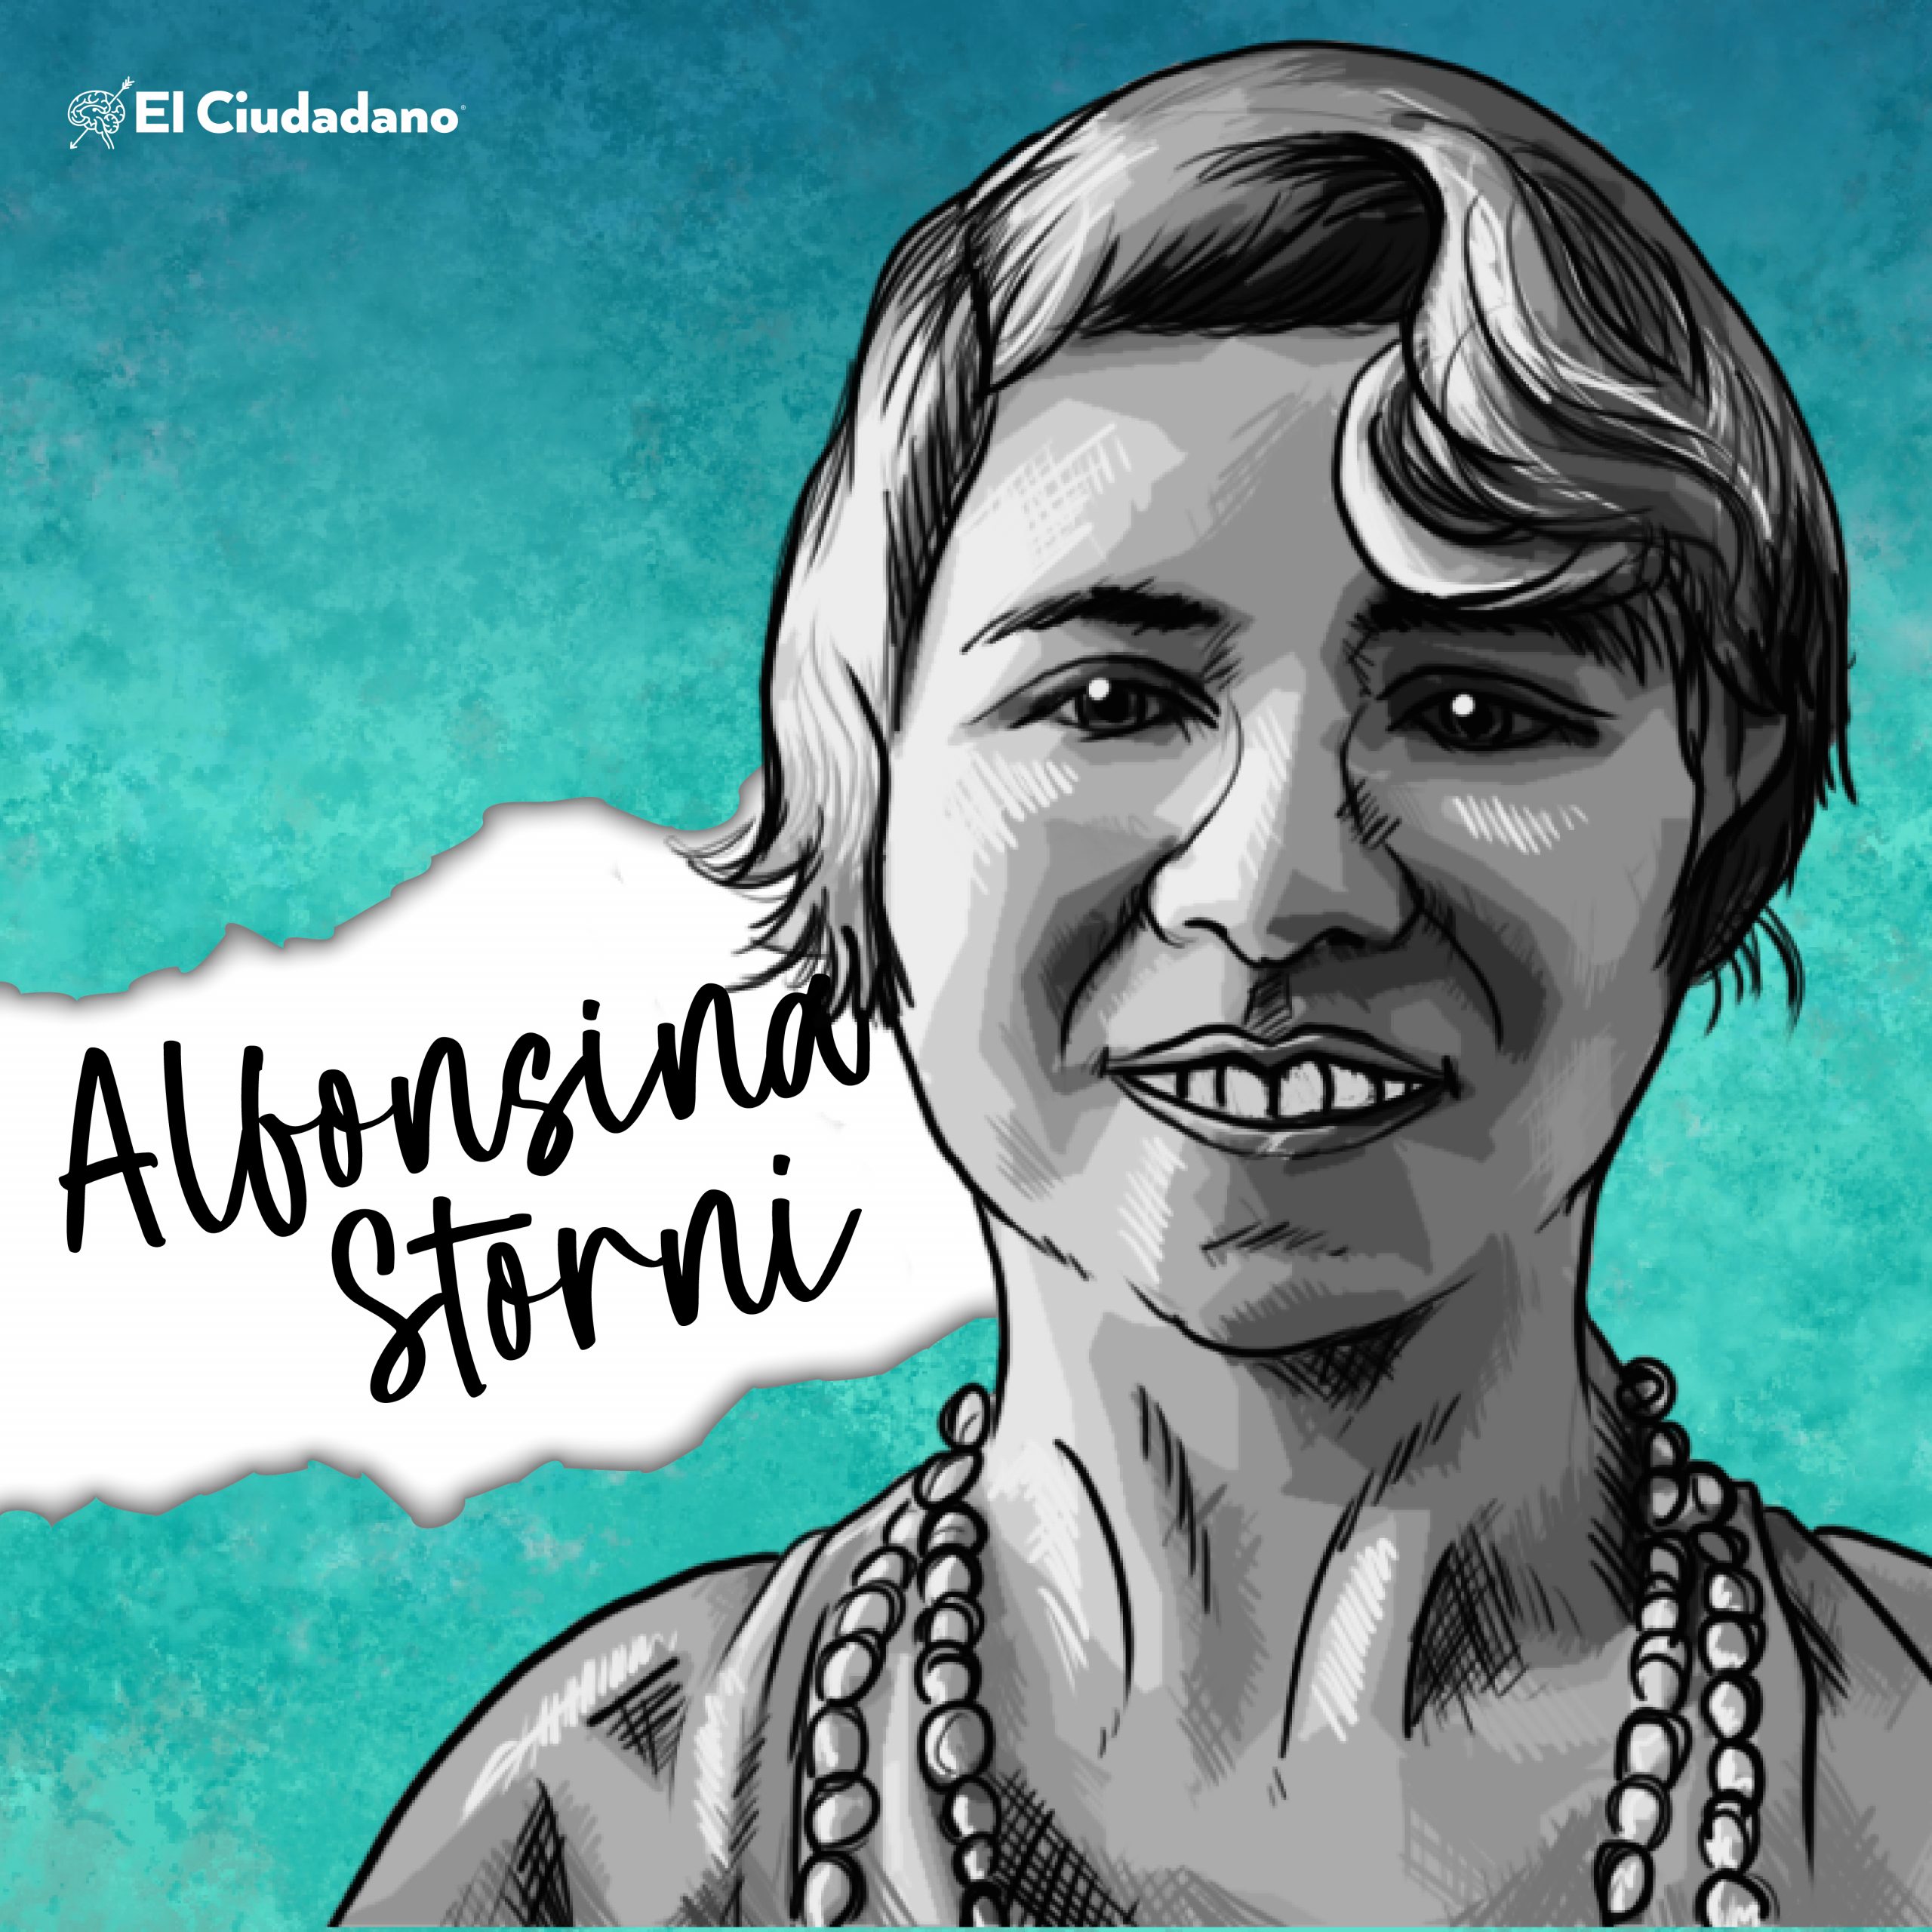 Alfonsina Storni